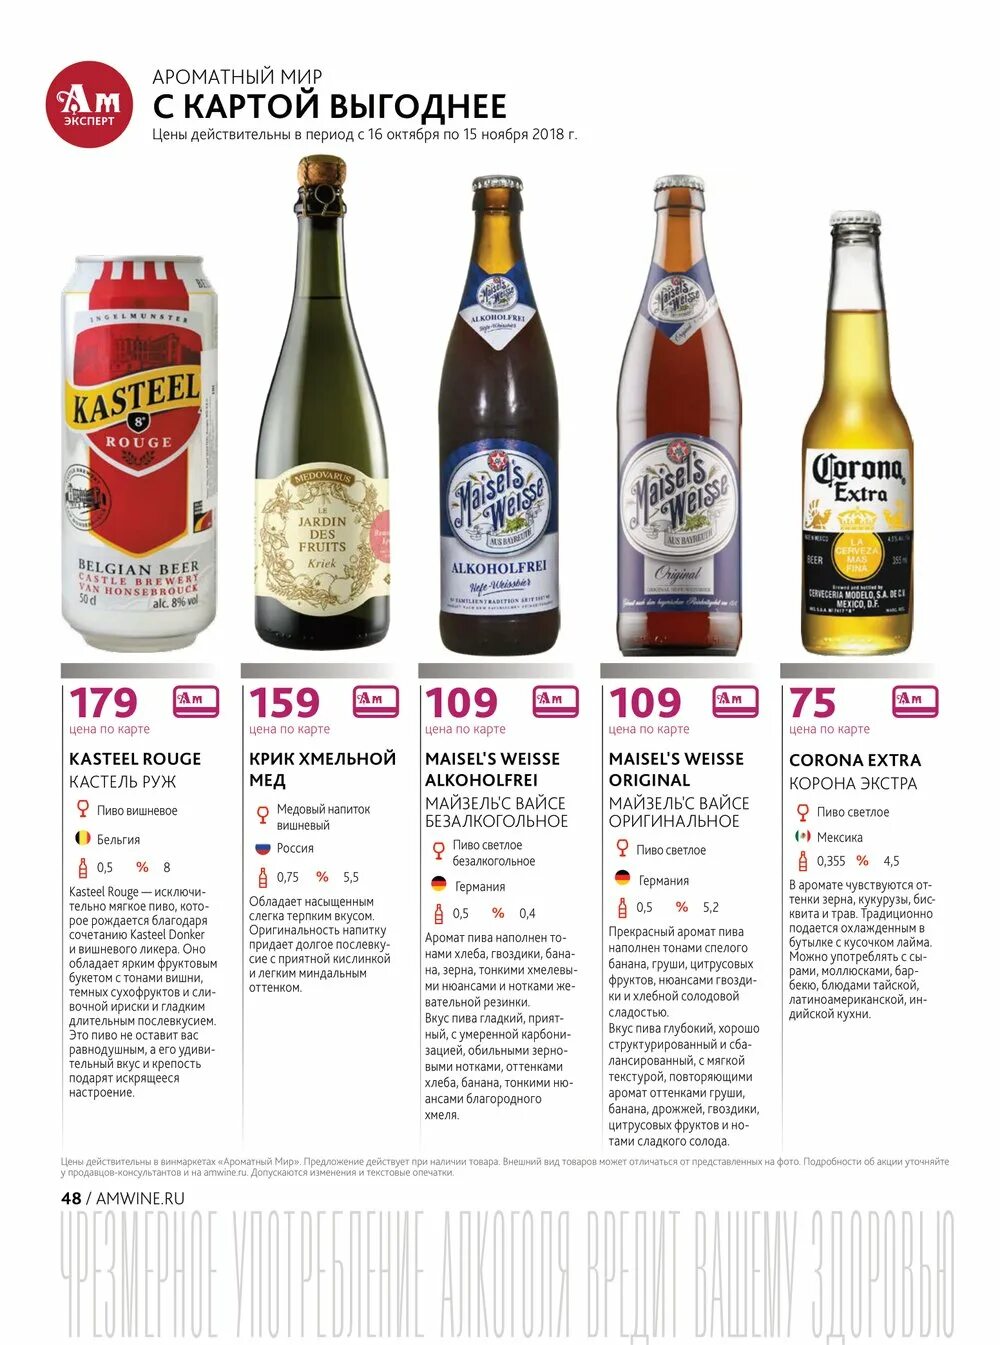 Немецкое пиво ароматный мир. Бельгийское пиво ароматный мир. Ароматный мир пиво каталог. Пиво ассортимент. Пивной каталог